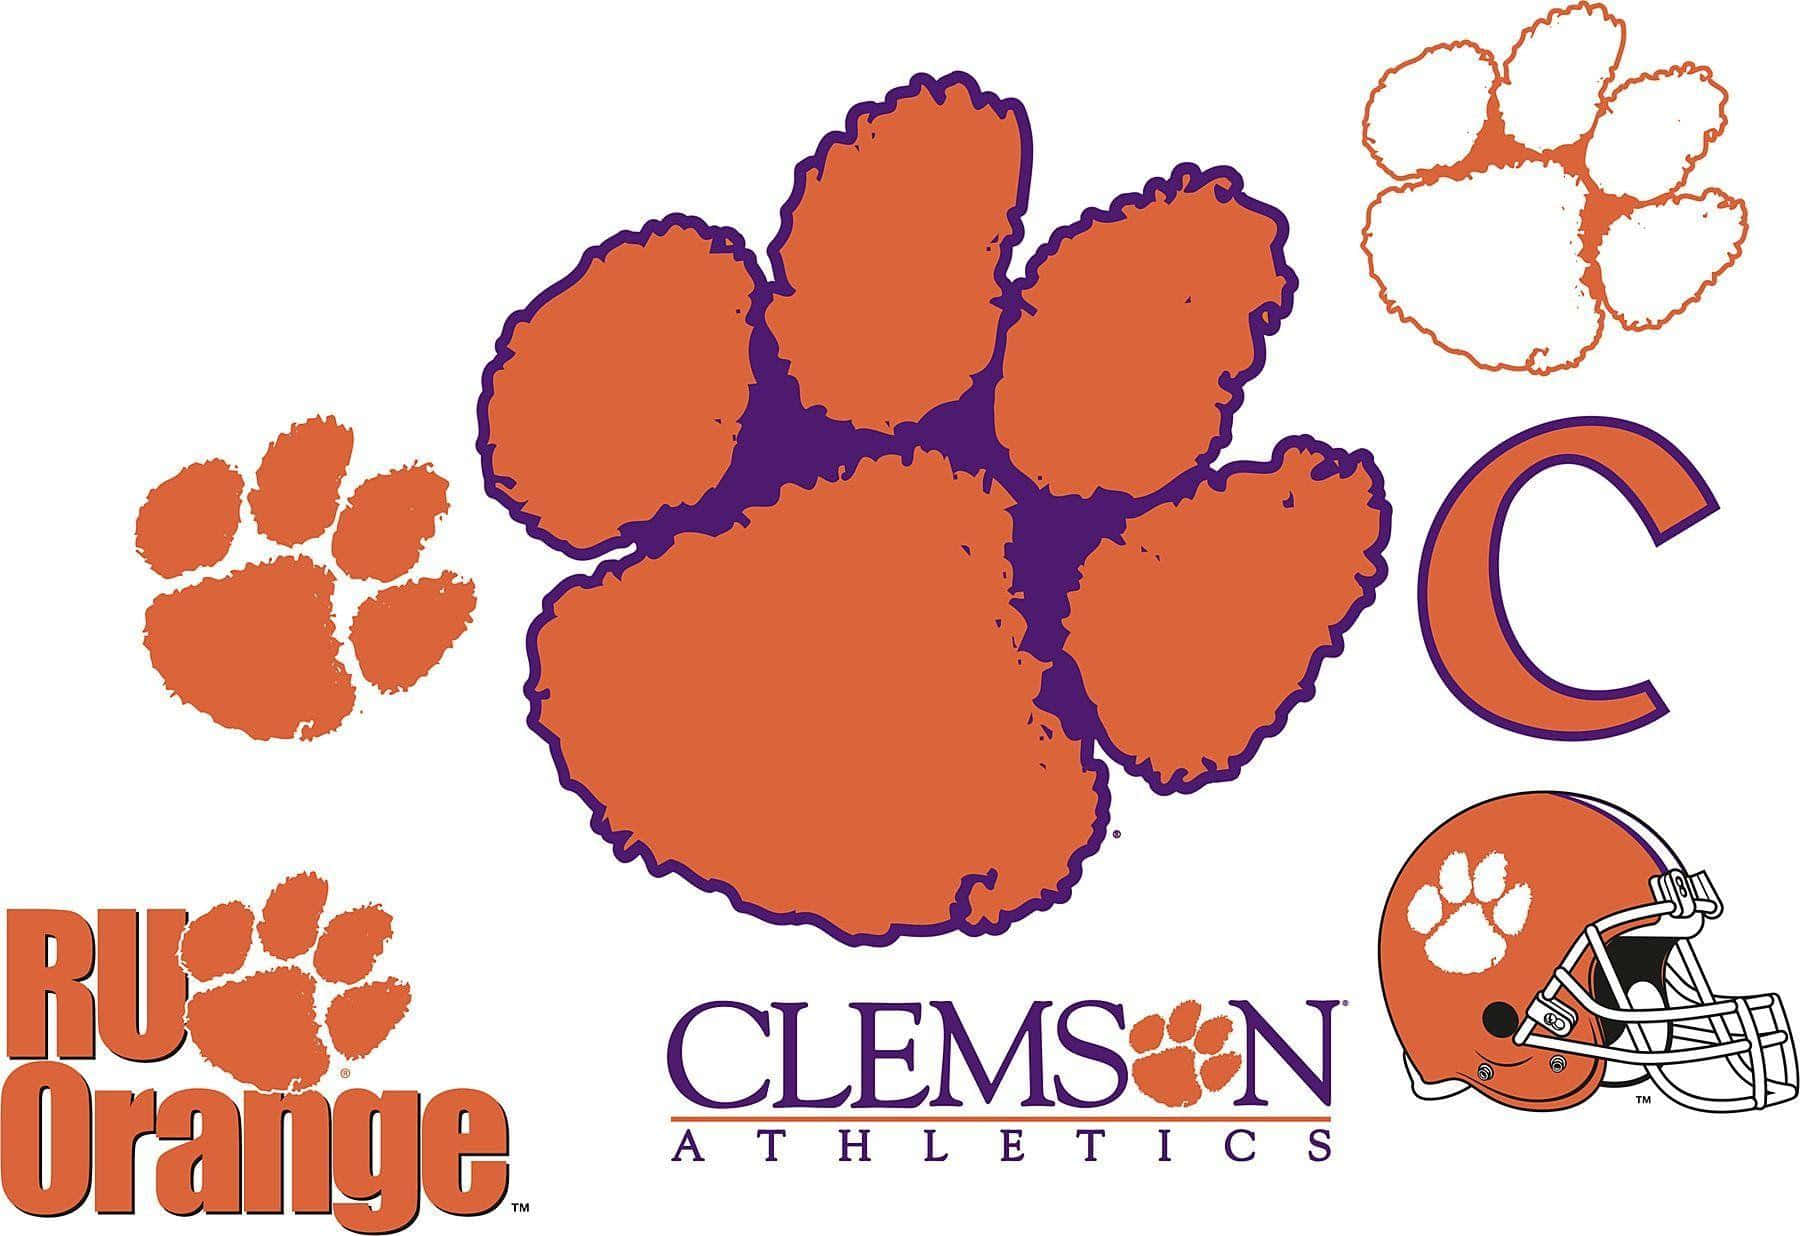 Firmadel Logotipo Naranja De Fútbol Americano De Los Clemson Tigers. Fondo de pantalla